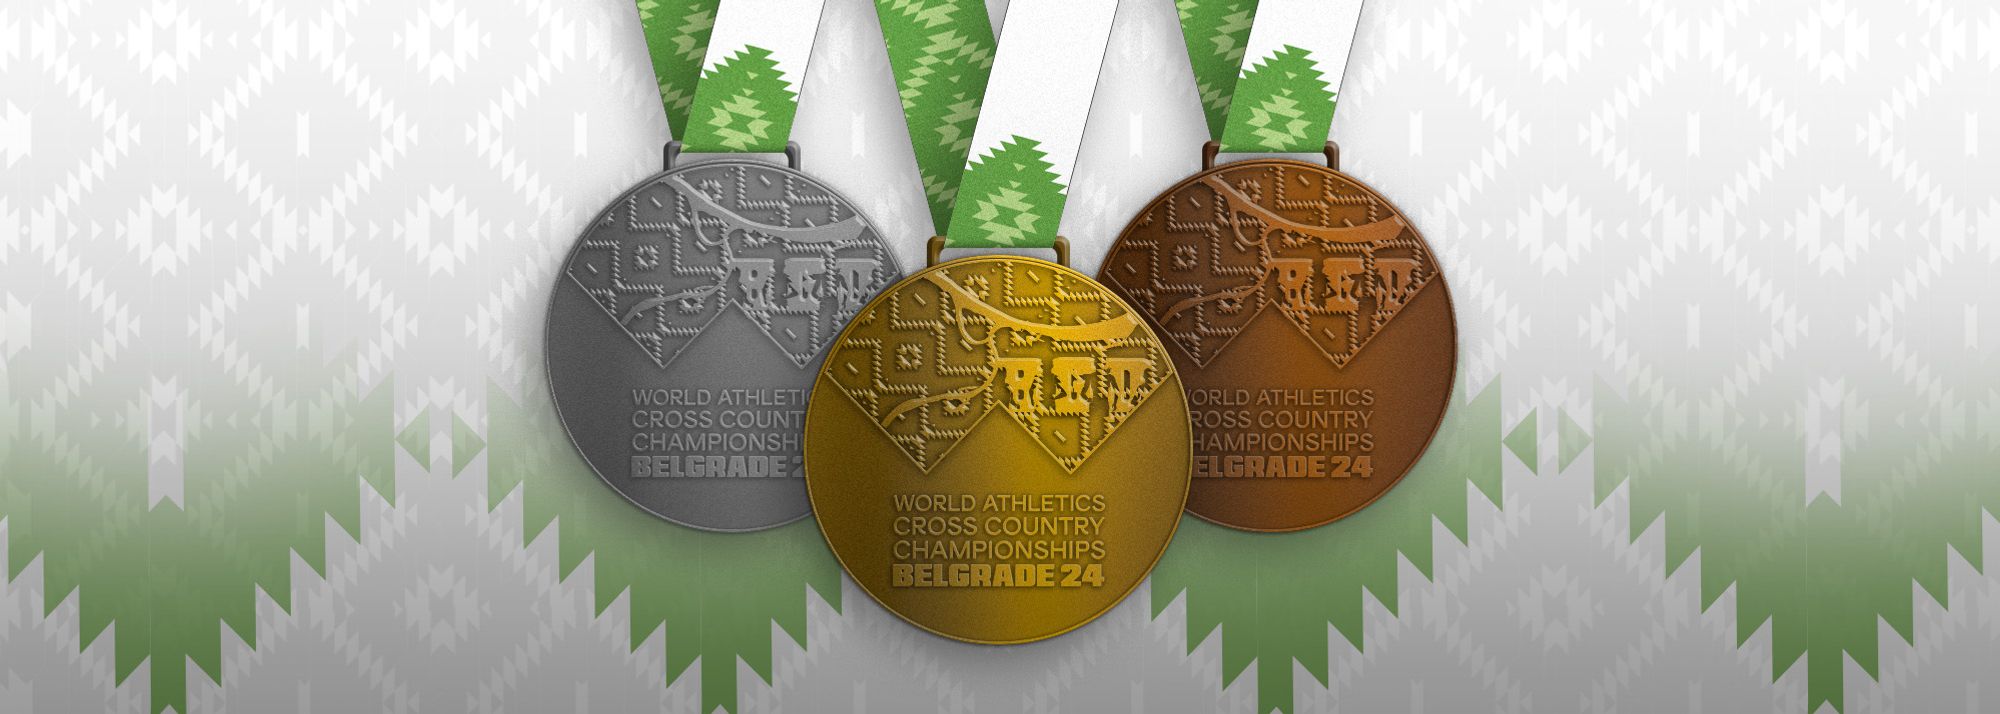 Са мало више од три недеље до Светског првенства у кросу у Београду, организатори су открили медаље за глобални догађај који ће се одржати 30. марта.